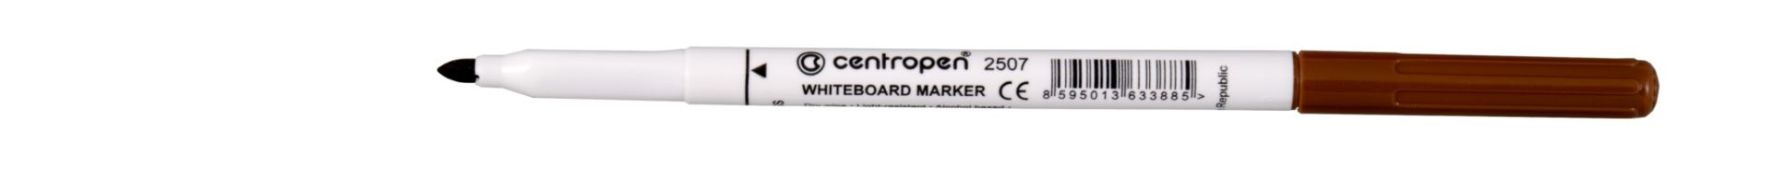 Značkovač CENTROPEN 2507 biele tab.hnedý